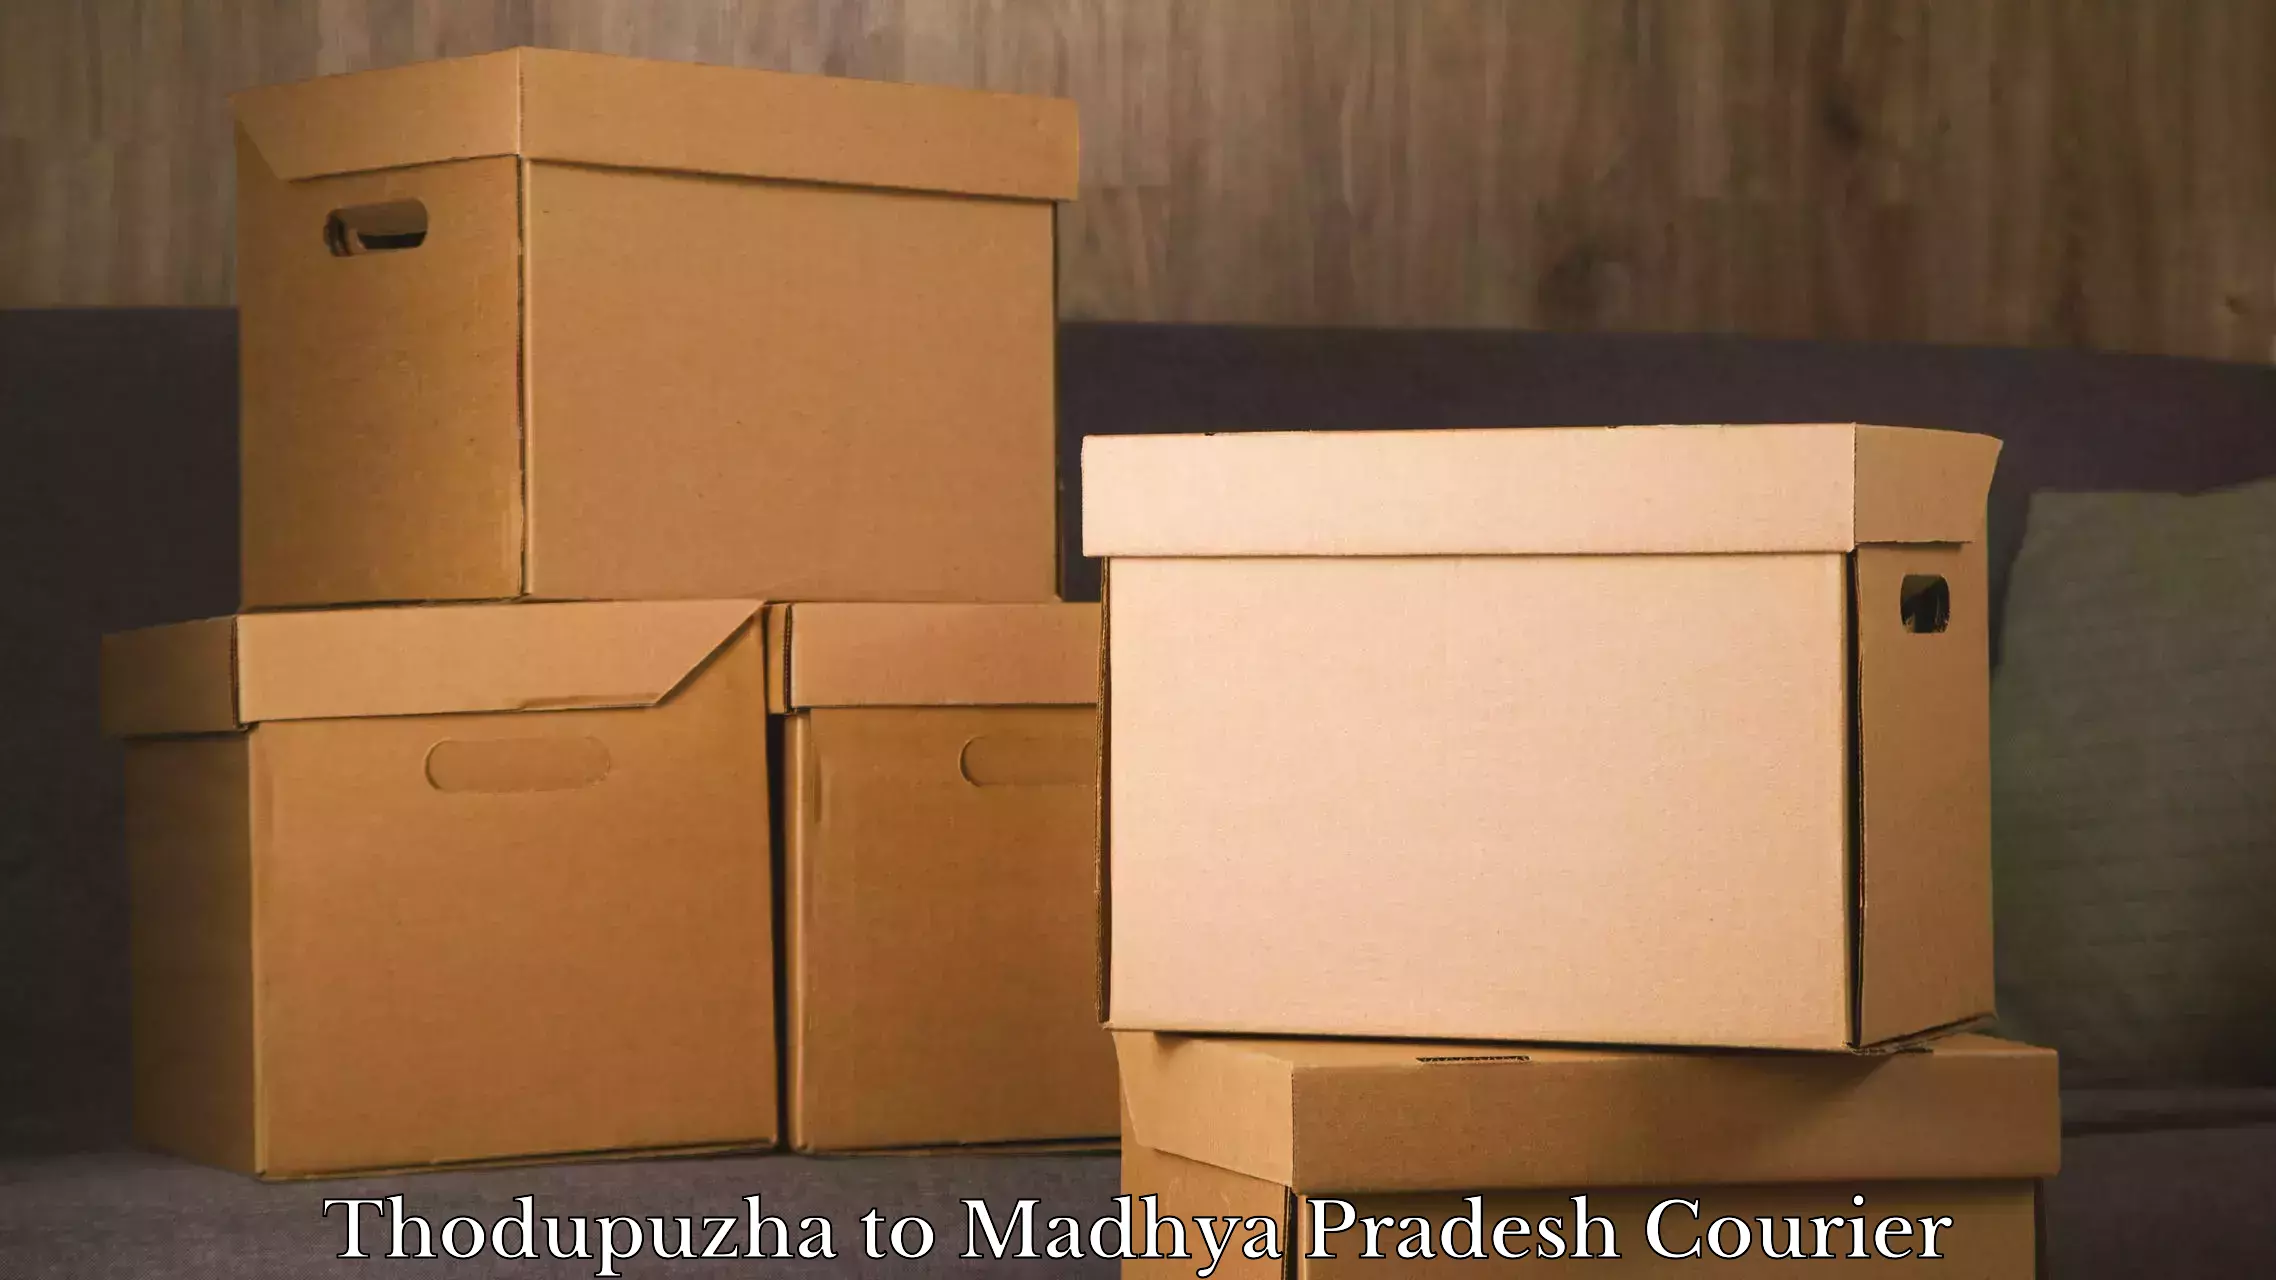 Luggage shipment specialists Thodupuzha to Hoshangabad